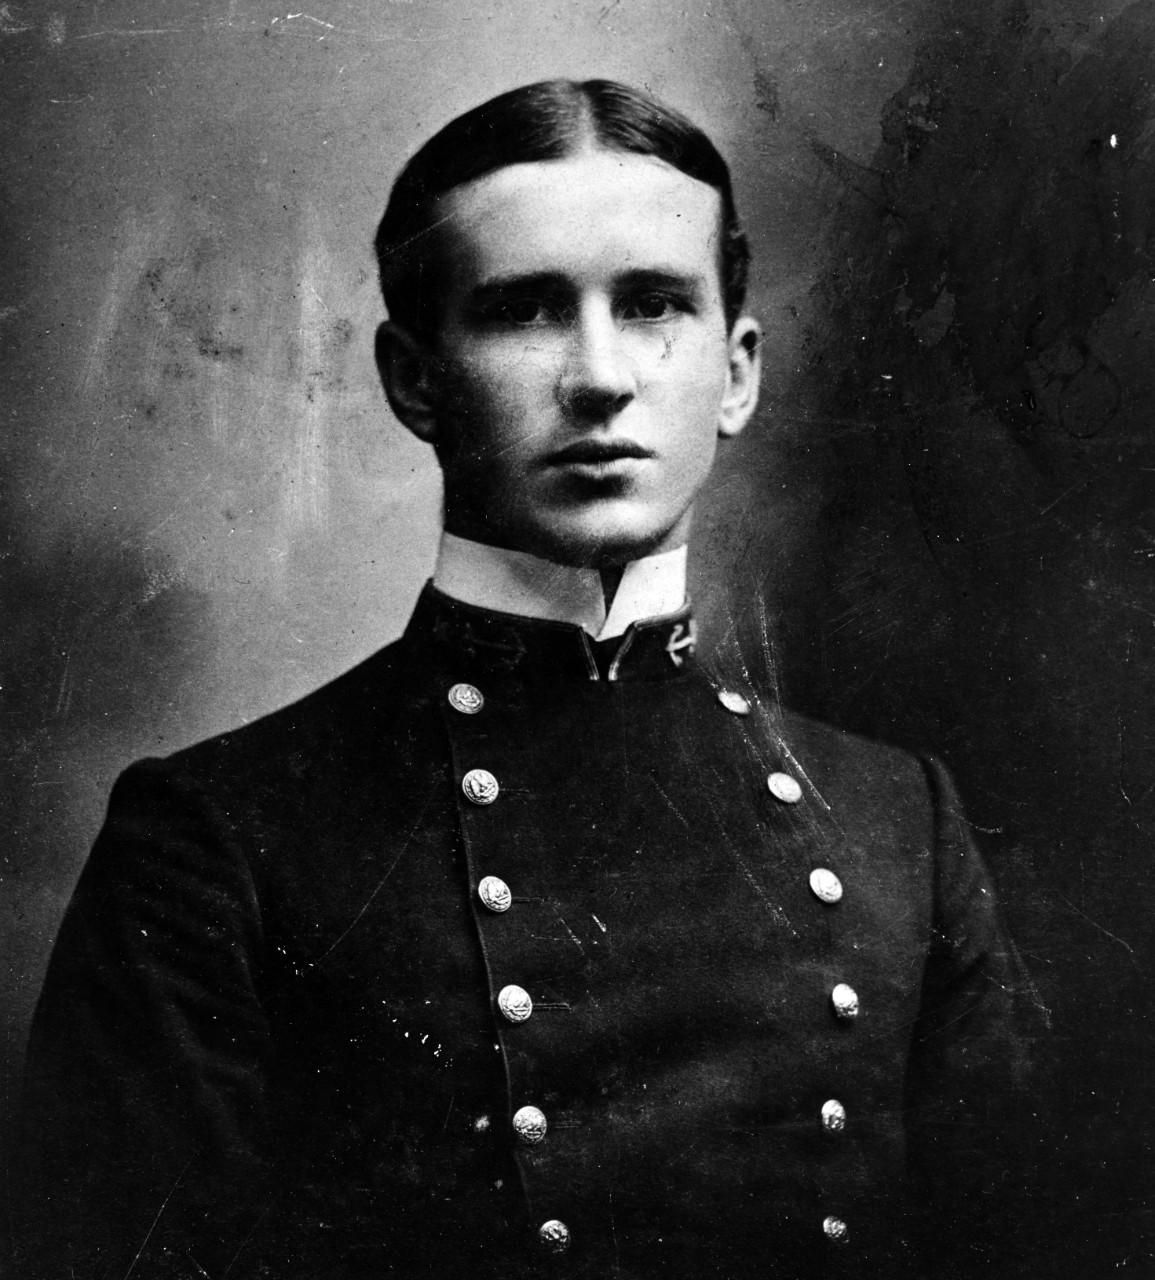 Cadet Captain Ernest J. King